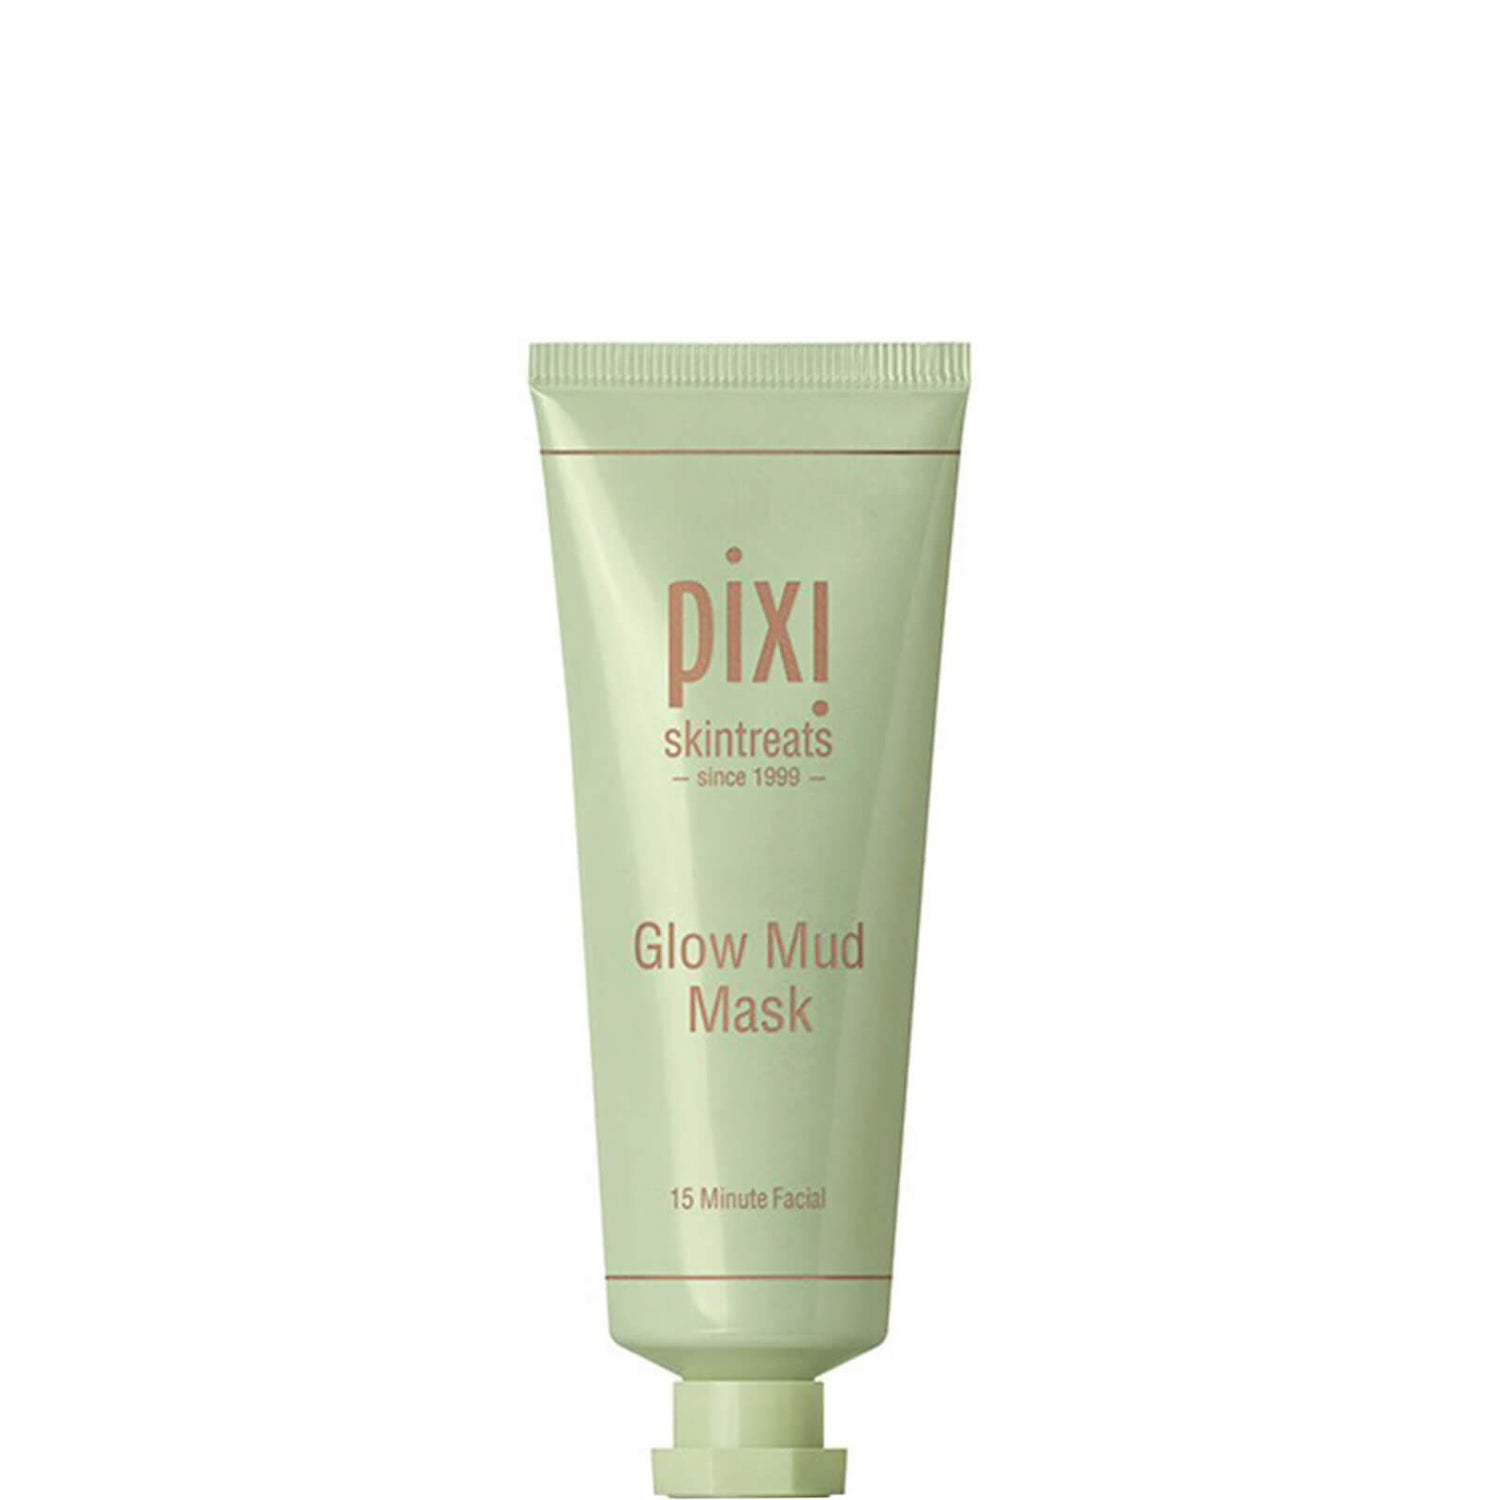 Pixi Glow Mud Mask